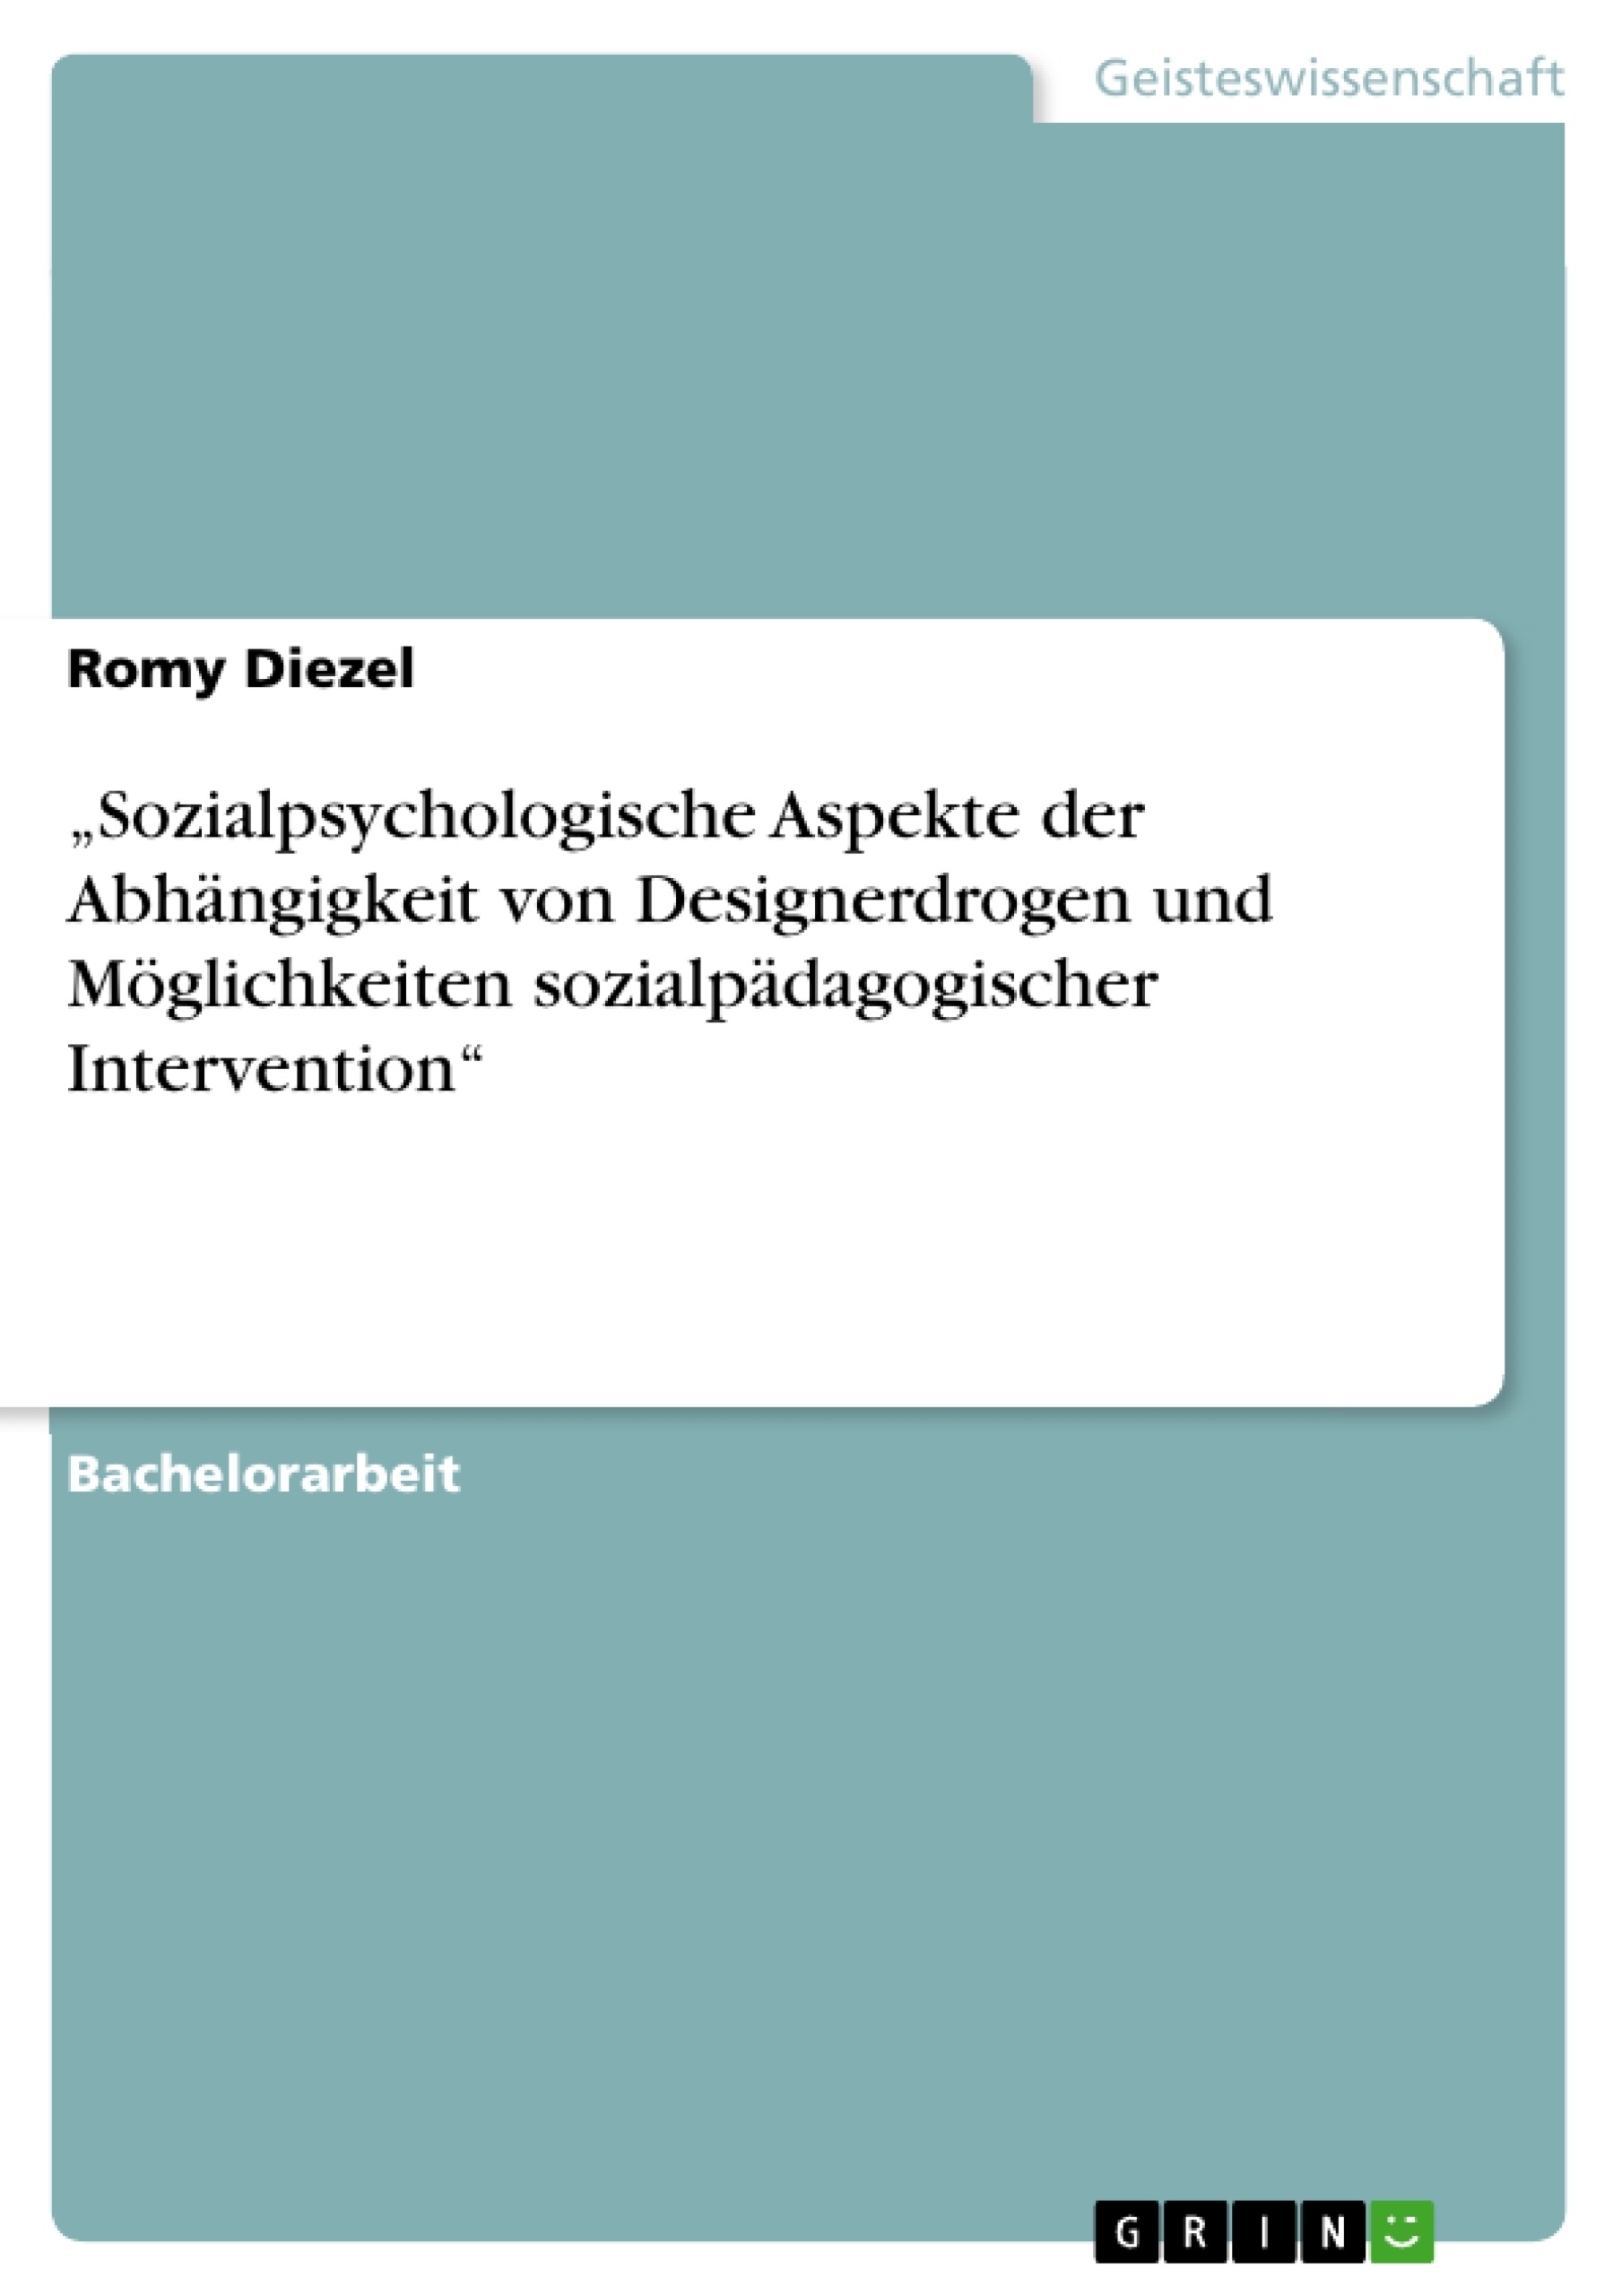 Titel: „Sozialpsychologische Aspekte der Abhängigkeit von Designerdrogen und Möglichkeiten sozialpädagogischer Intervention“